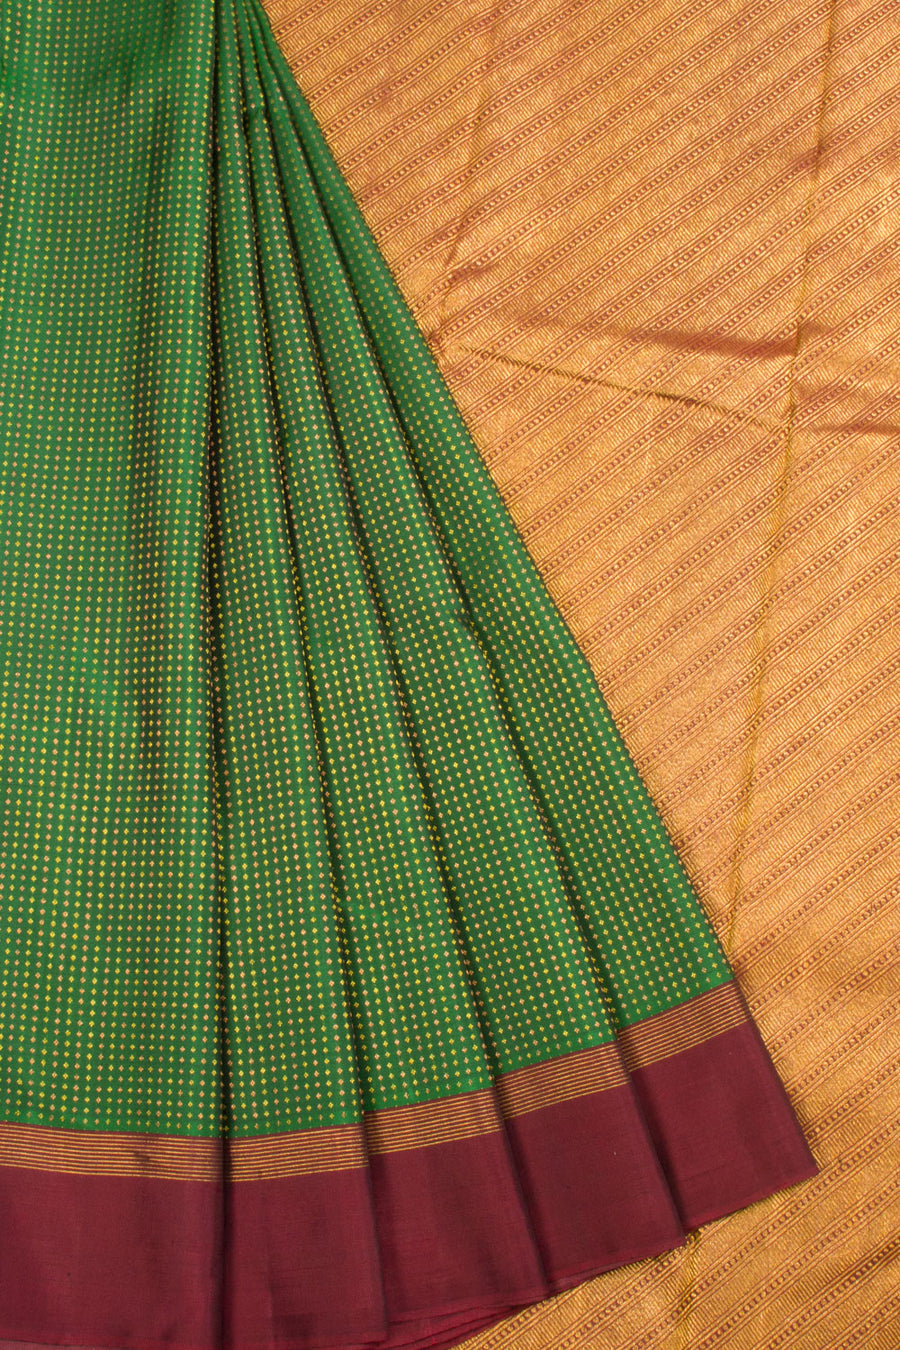 Green Handloom Kanjivaram silk saree - Avishya